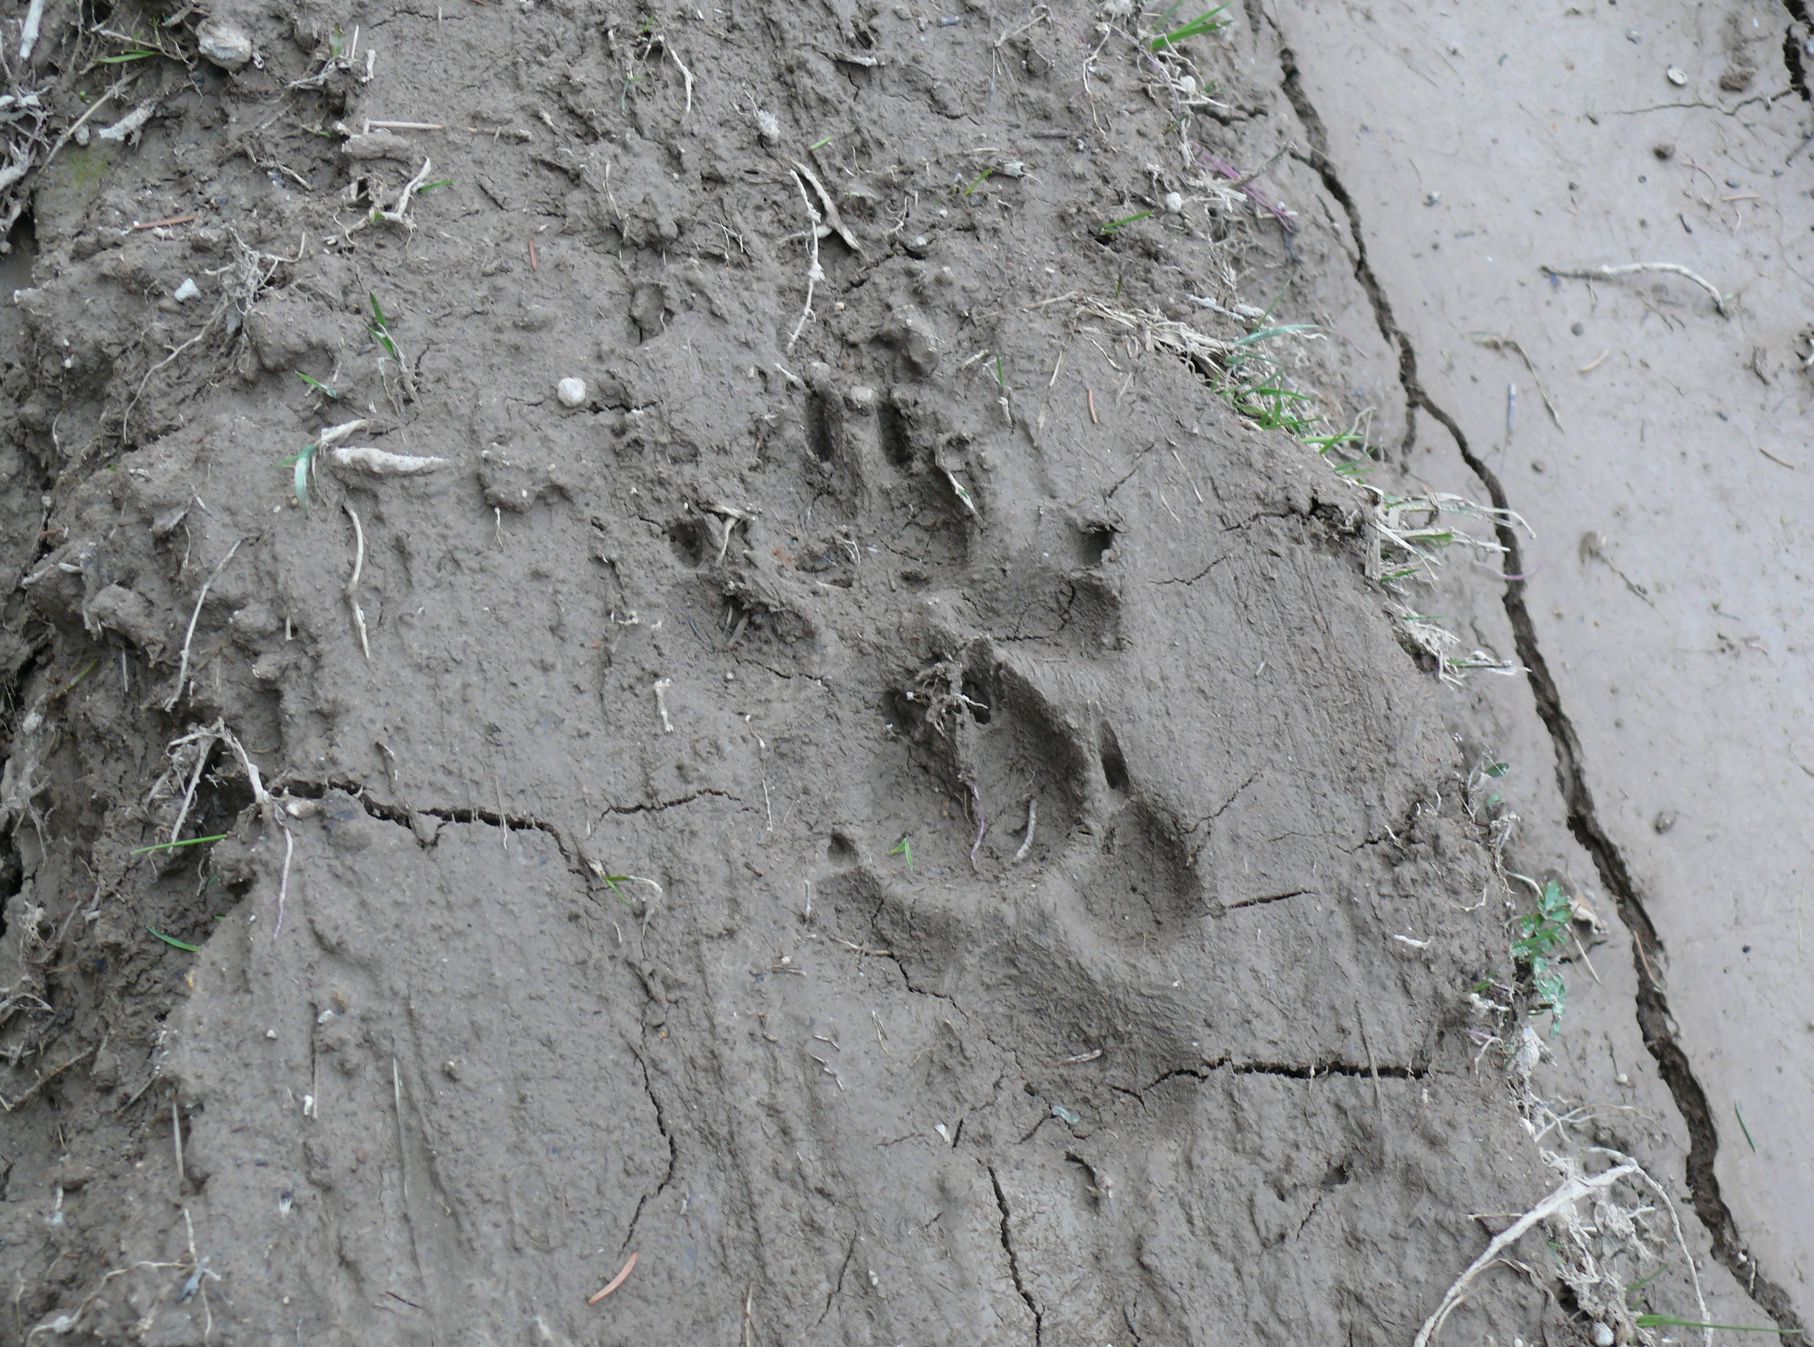 Északerdő Zrt.: Állandósul a farkas jelenléte a Zemplénben